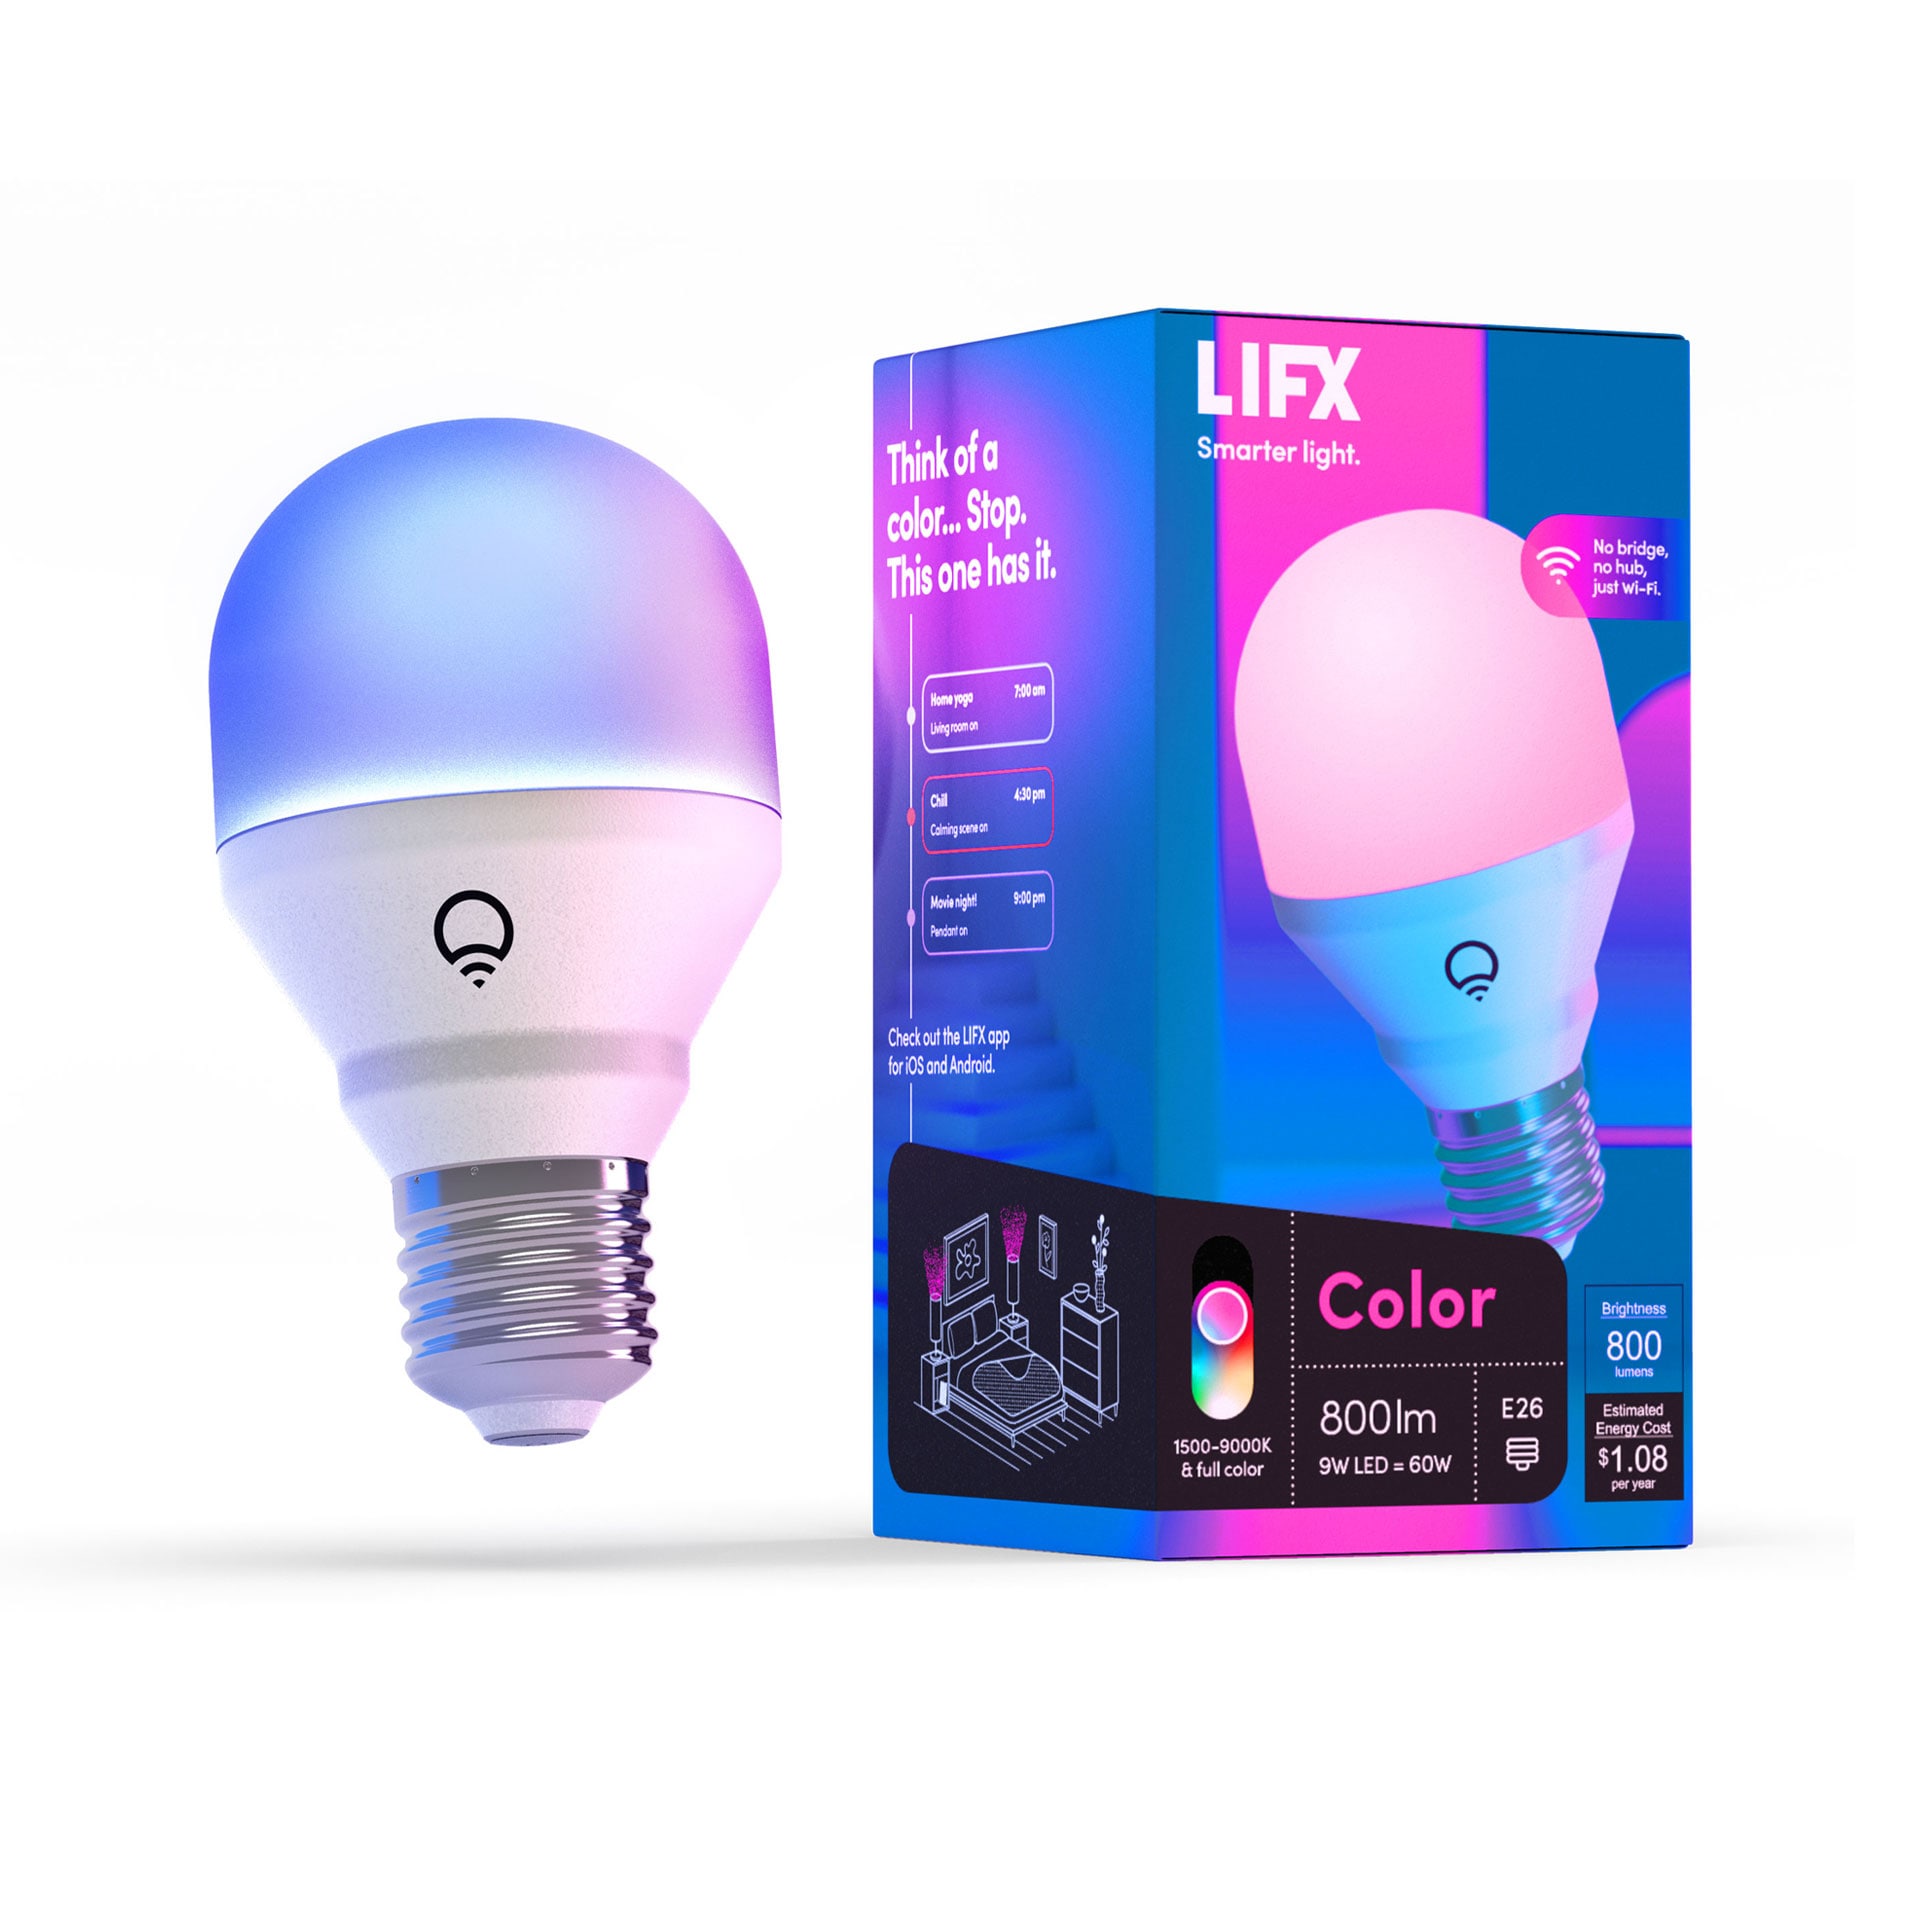 Mindst Skænk bekymre LIFX Light Bulbs at Lowes.com